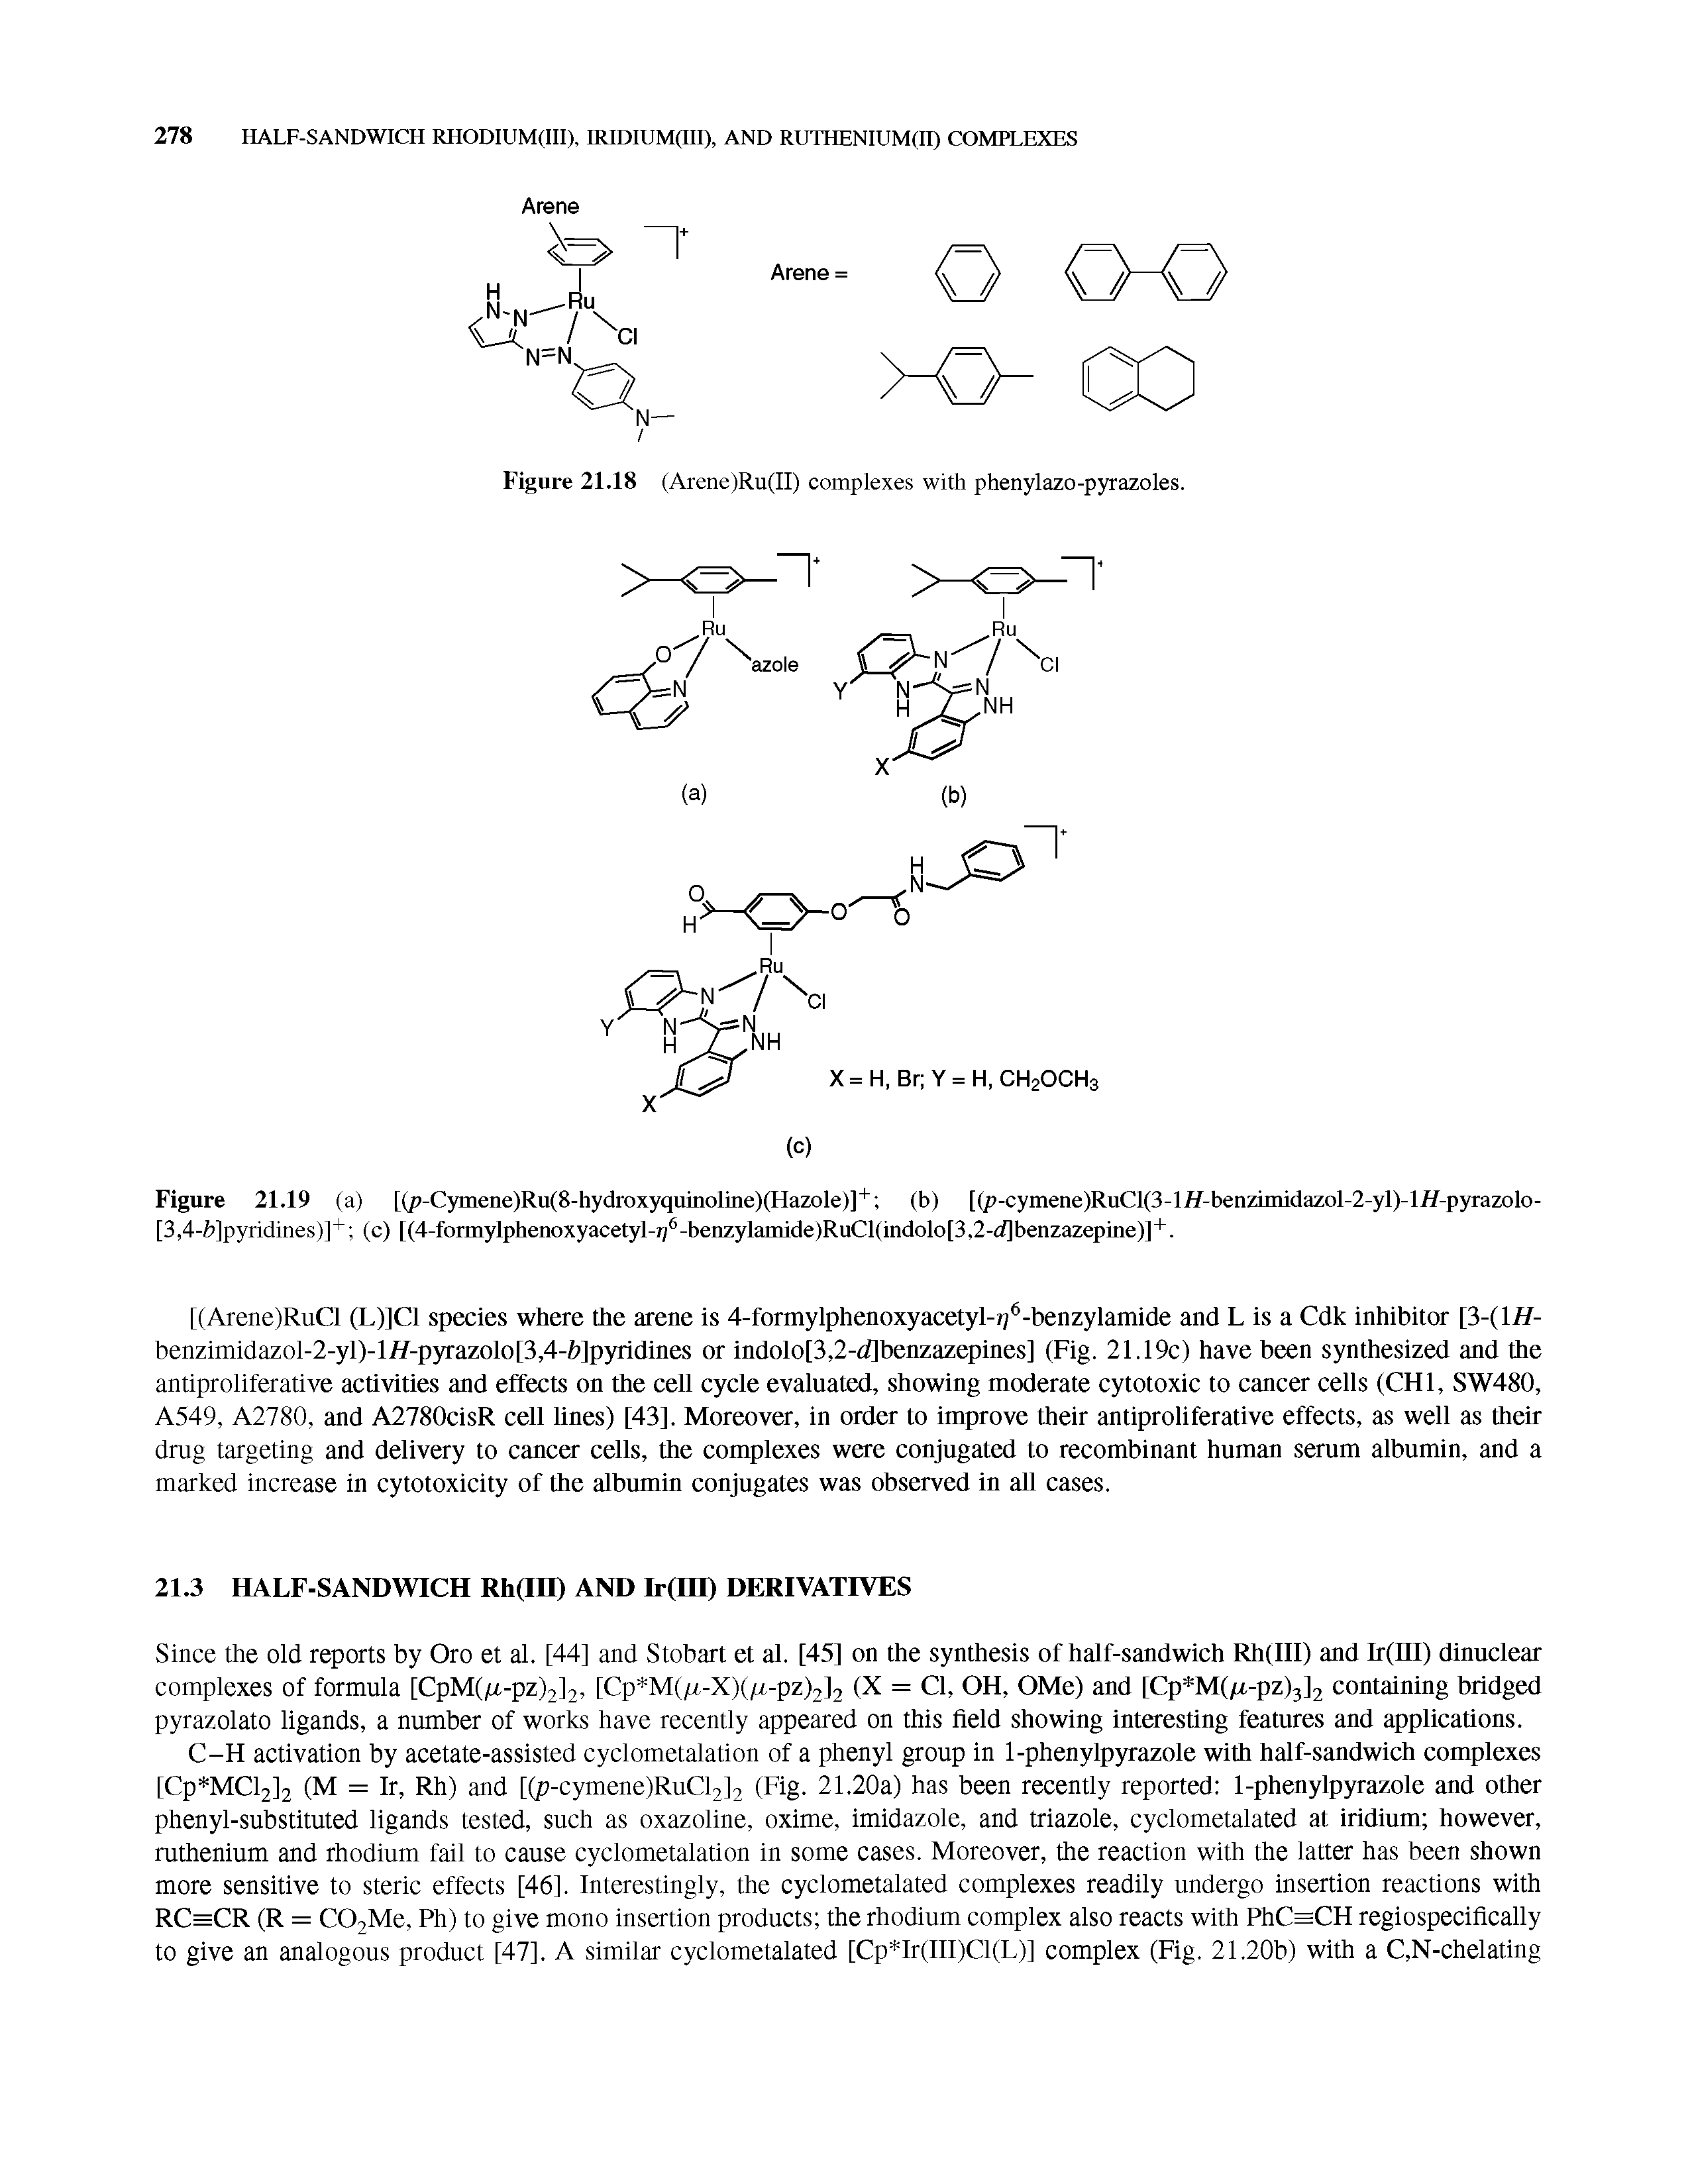 Figure 21.18 (Arene)Ru(II) complexes with phenylazo-pyrazoles.